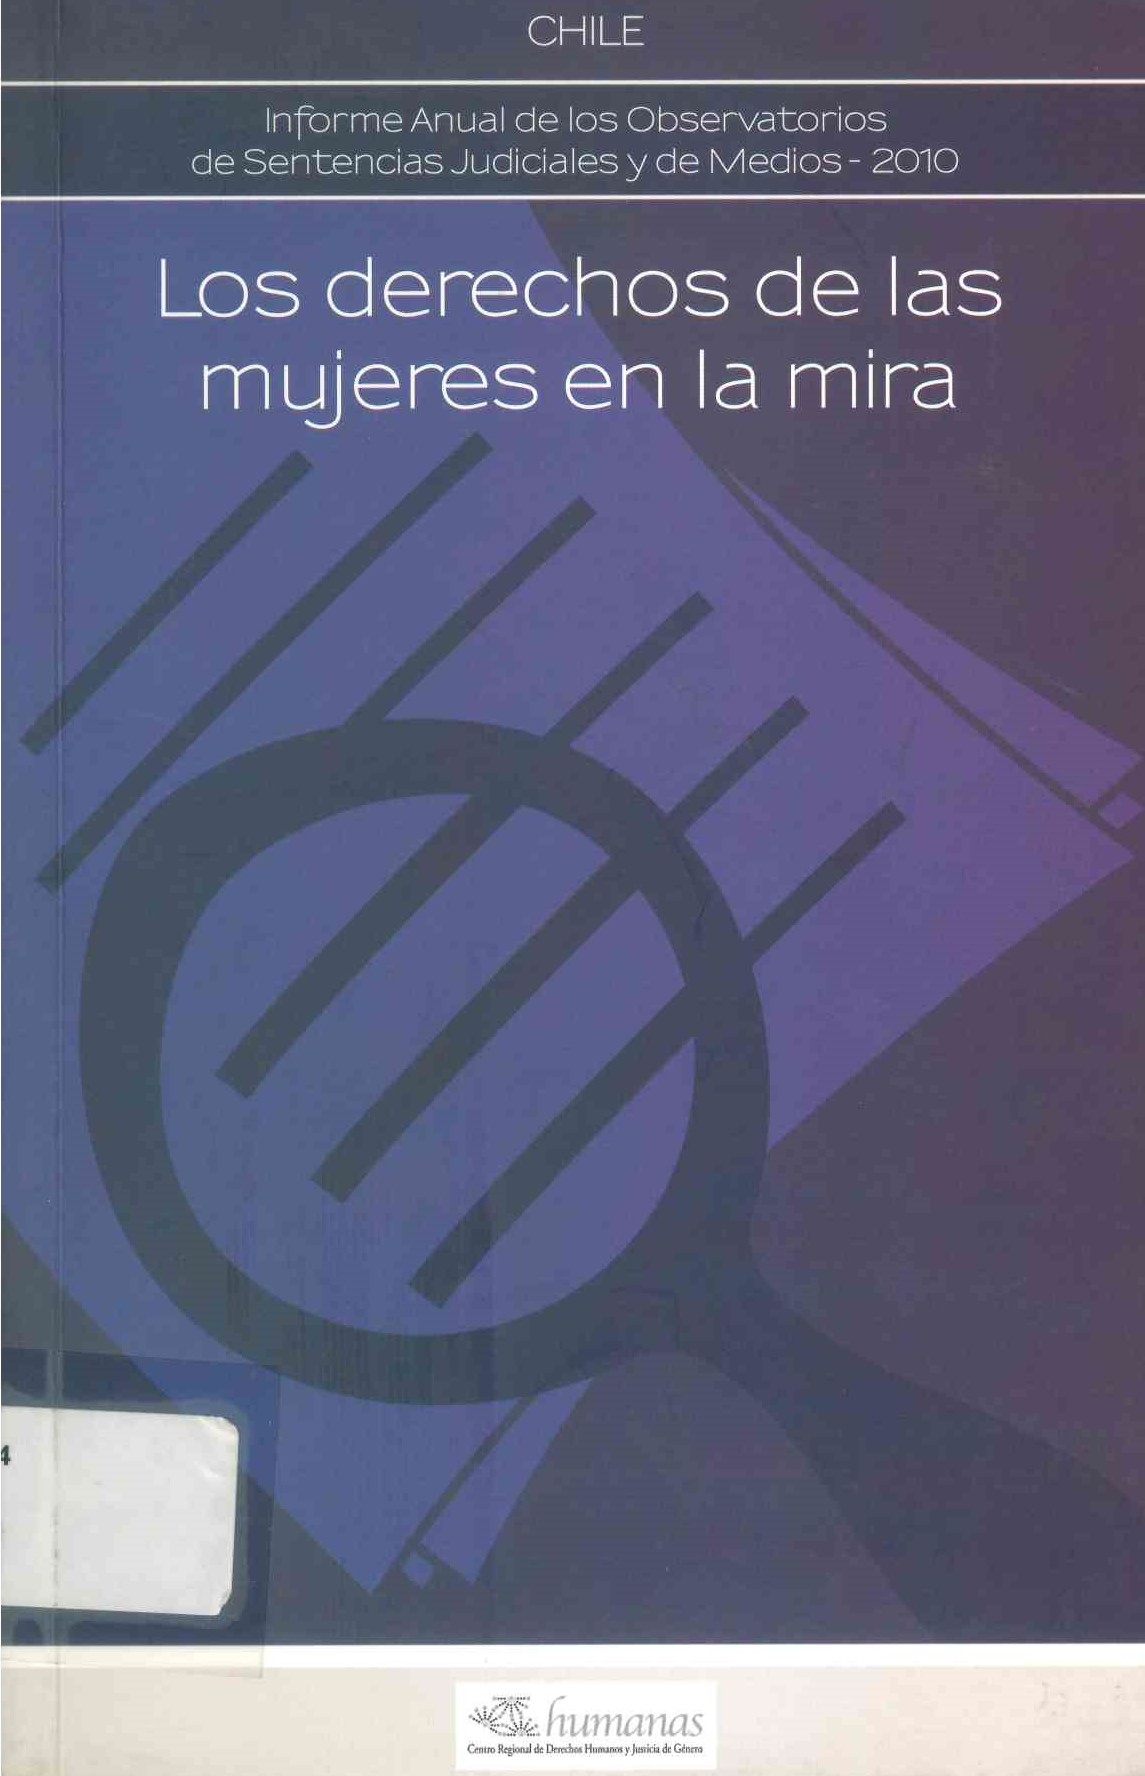 Chile. Informe anual de los observatorios de sentencias judiciales y de medios 2010. Los derechos de las mujeres en la mira